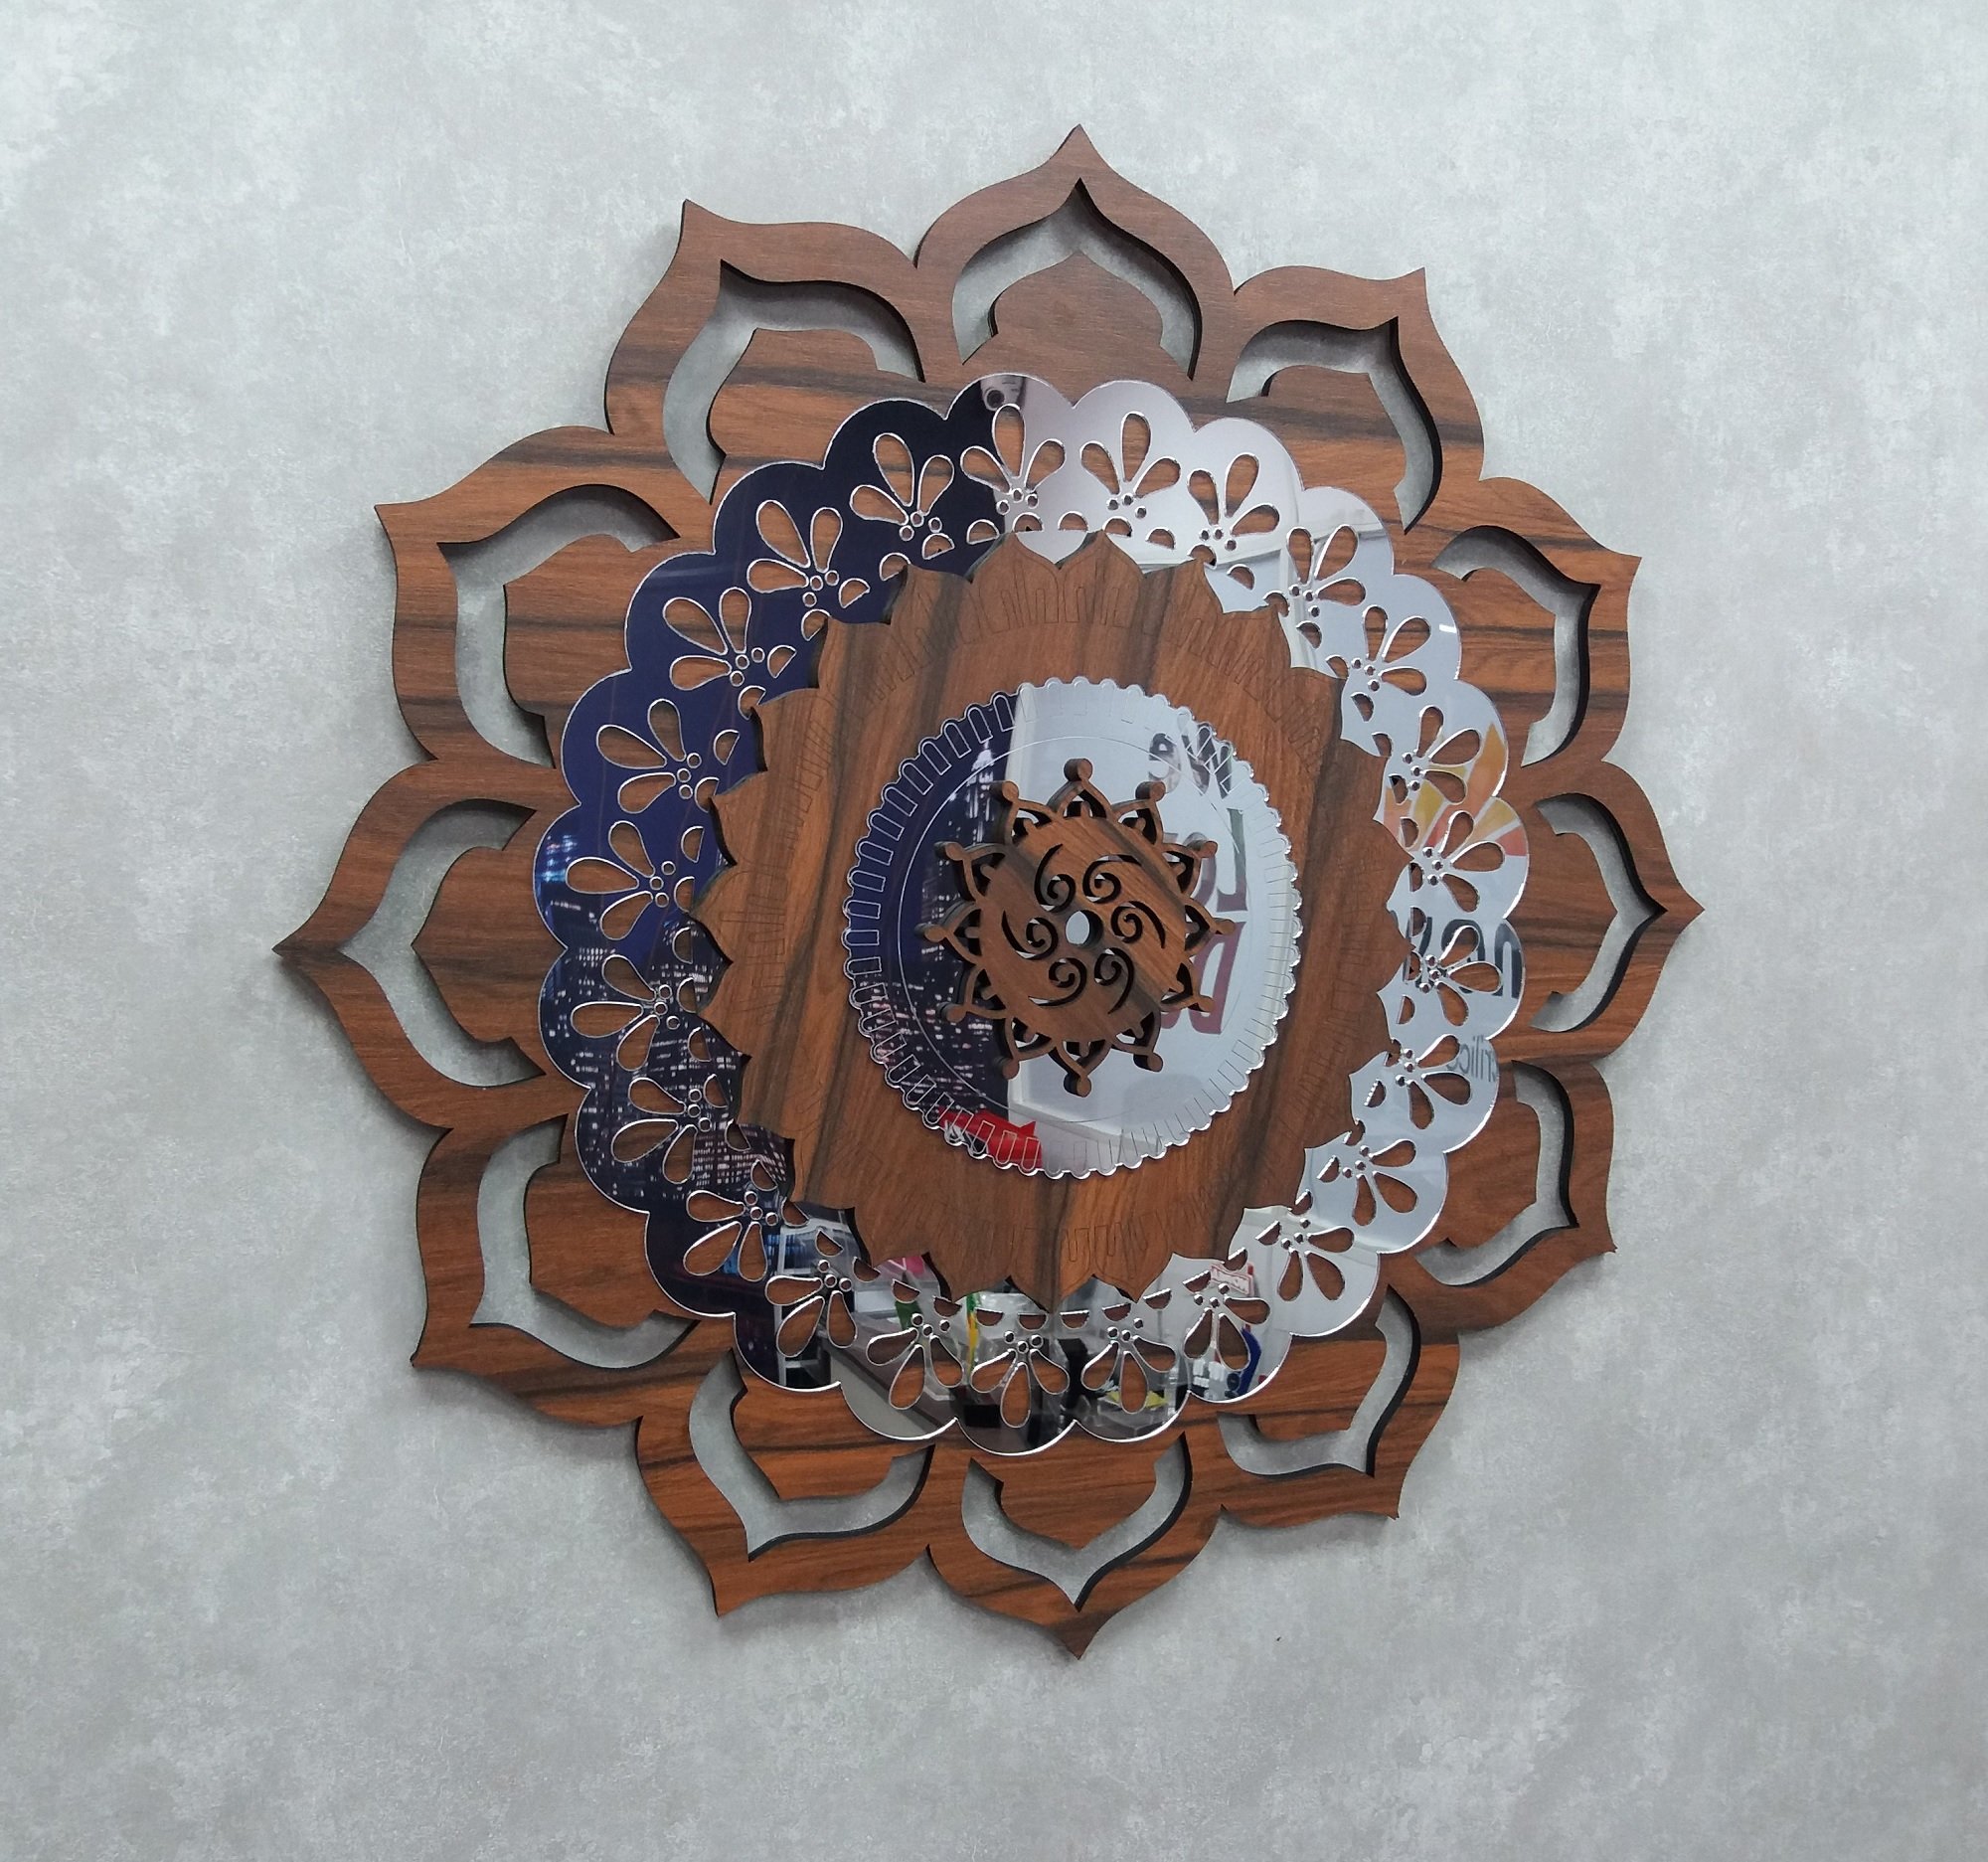 Quadro Mandala Decorativa em Madeira 65 cm 38108:Marrom - 5